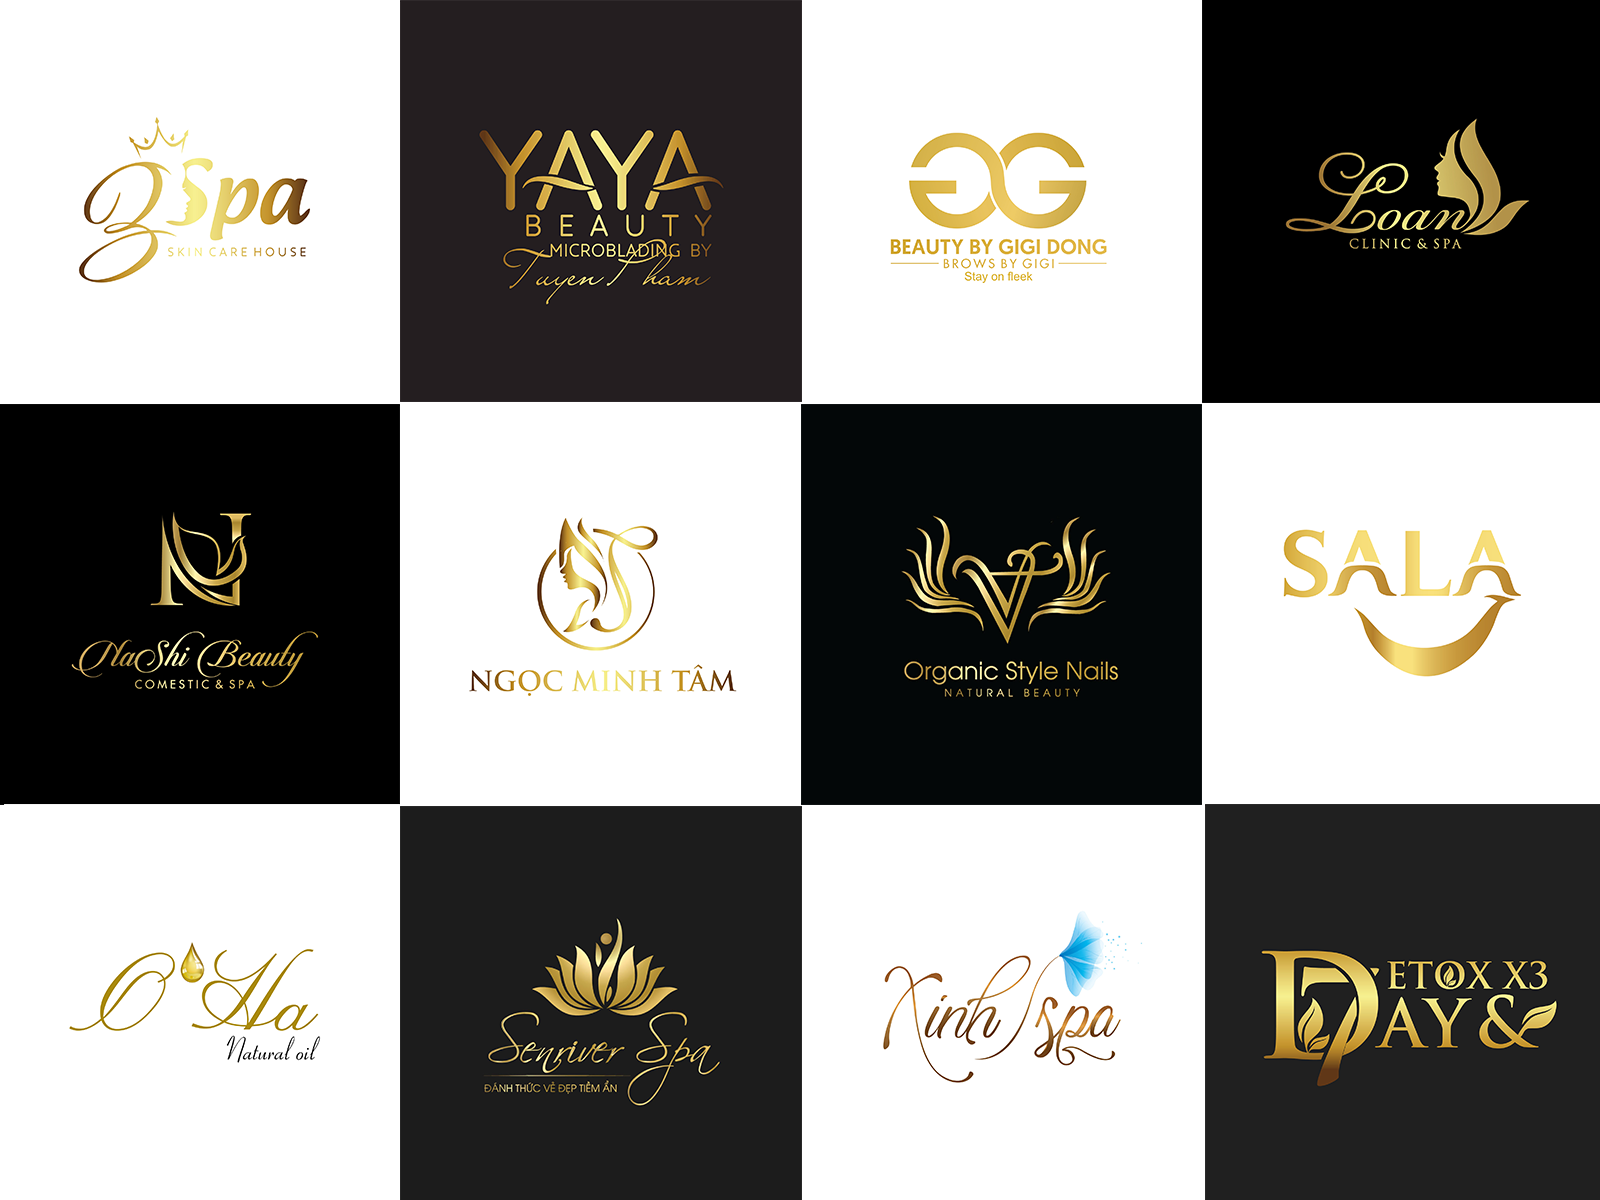 Thiết kế logo làm đẹp chuyên nghiệp đang là nhu cầu thiết yếu của các salon hiện nay. Để thu hút khách hàng, bạn cần có một logo đẹp, tinh tế và đẳng cấp. Với sự chuyên nghiệp và kinh nghiệm của đội ngũ thiết kế của chúng tôi, chắc chắn rằng chúng tôi sẽ đem đến cho bạn một mẫu logo đẳng cấp và tinh tế.